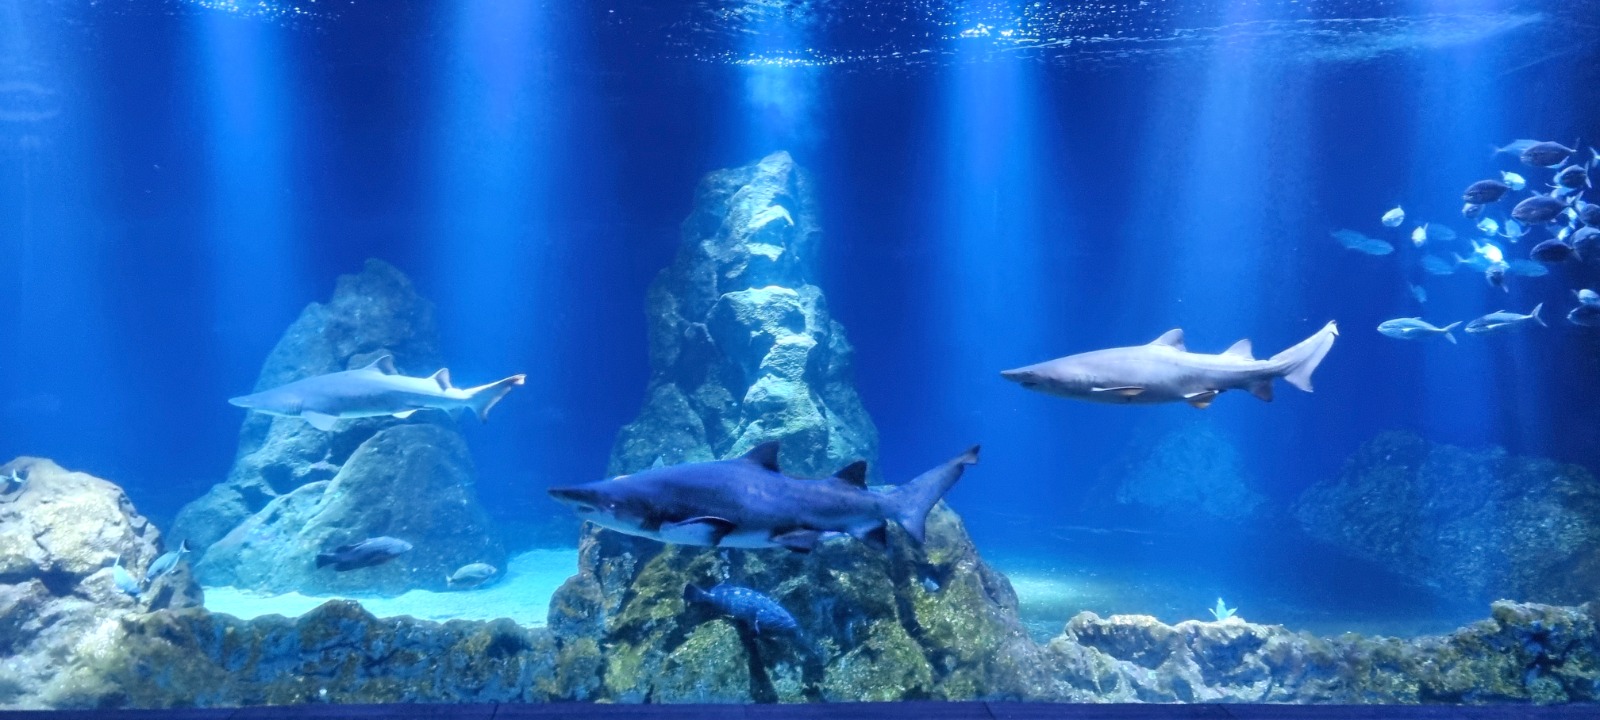 ברוך הבא לגן החיות התנ"כי: כריש-שן שורי נוסף הצטרף לאקווריום ישראל